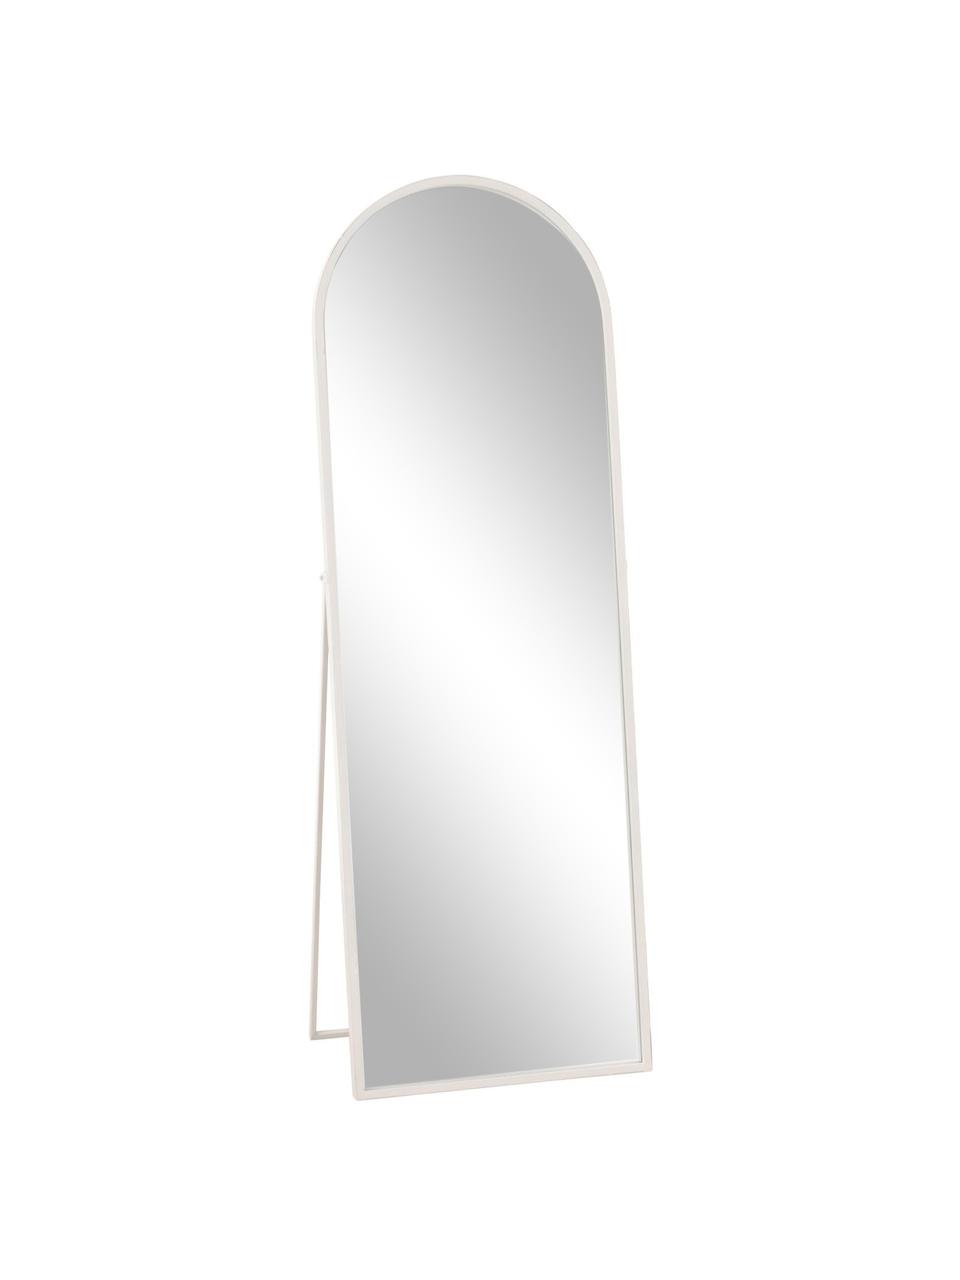 Standspiegel Espelho, Rahmen: Metall, beschichtet, Weiss, B 51 x H 148 cm